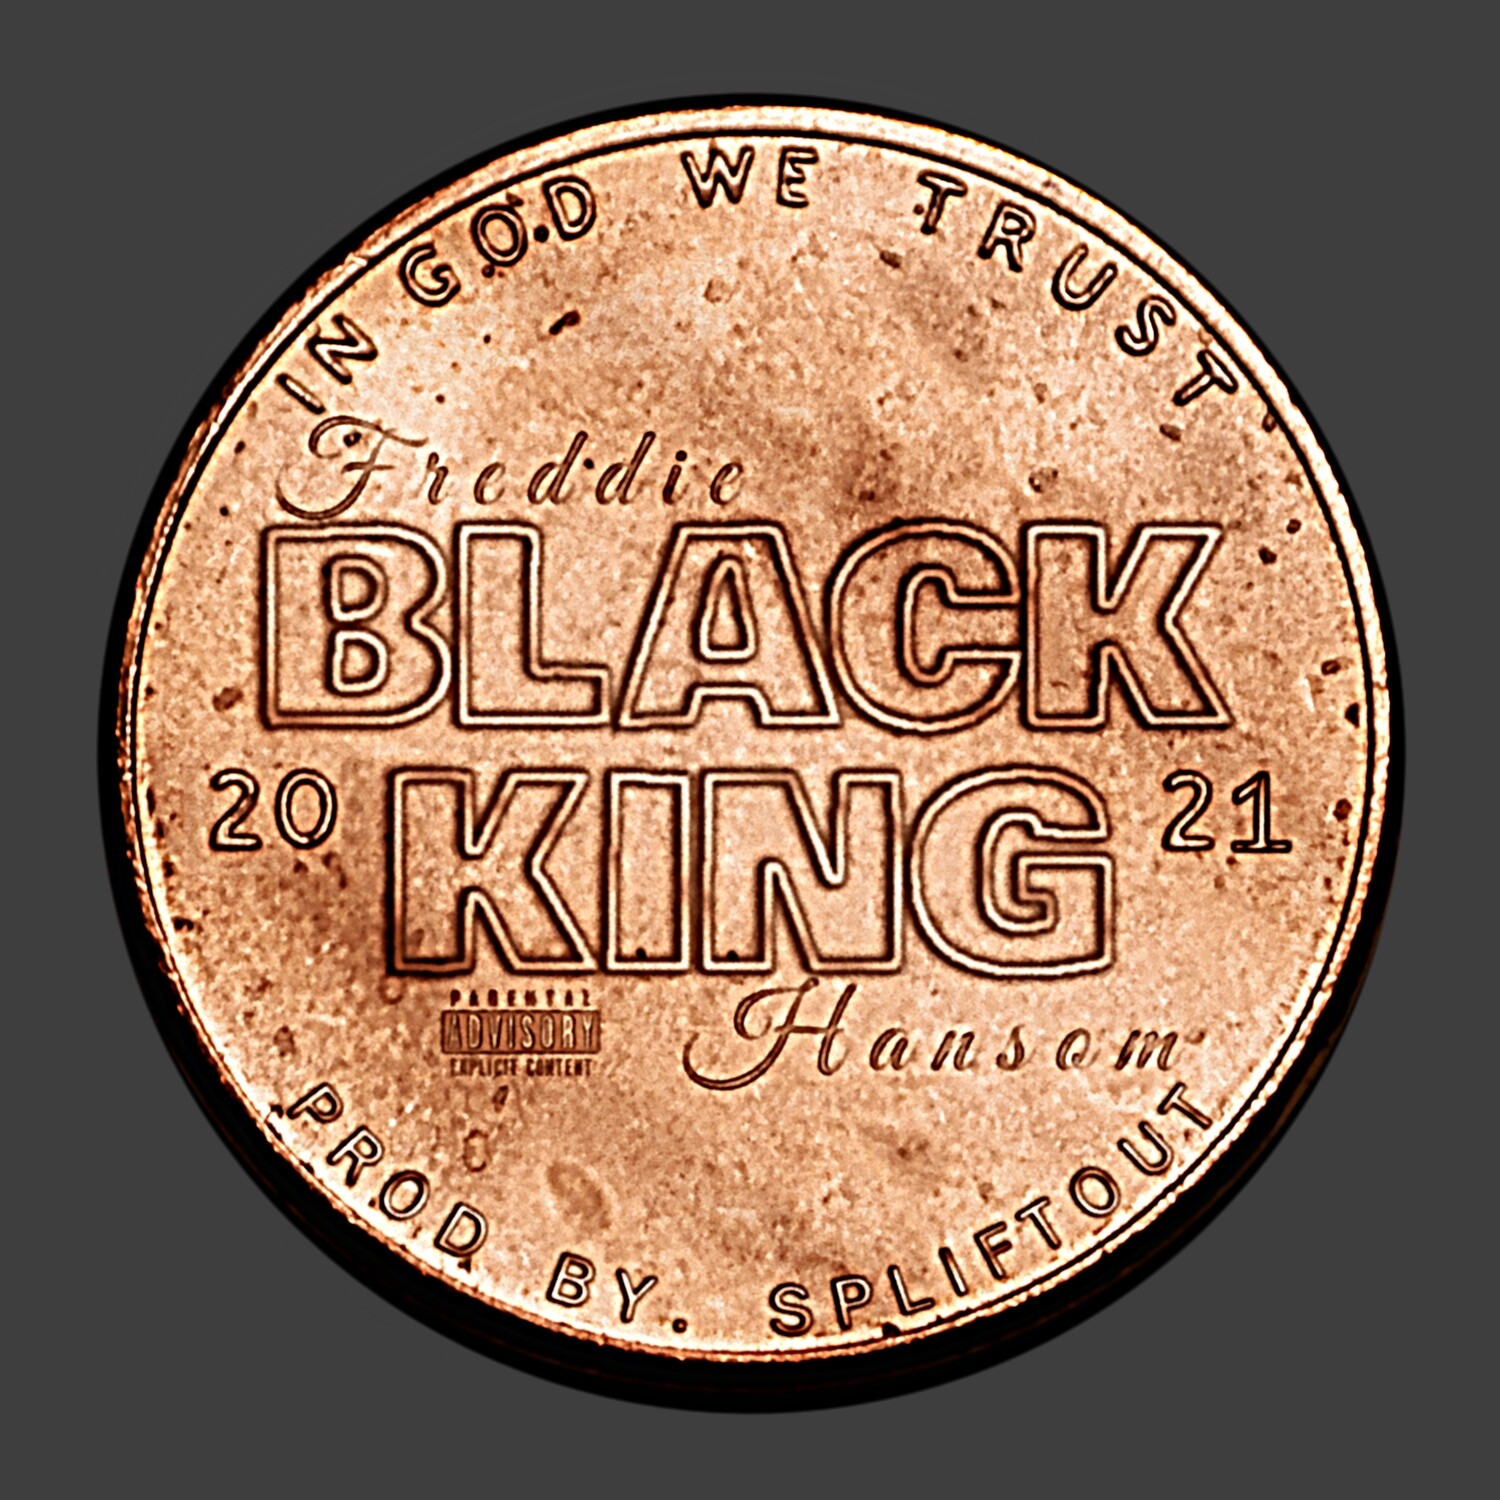 Black King "In God We Trust" (prod. by Spliftout)